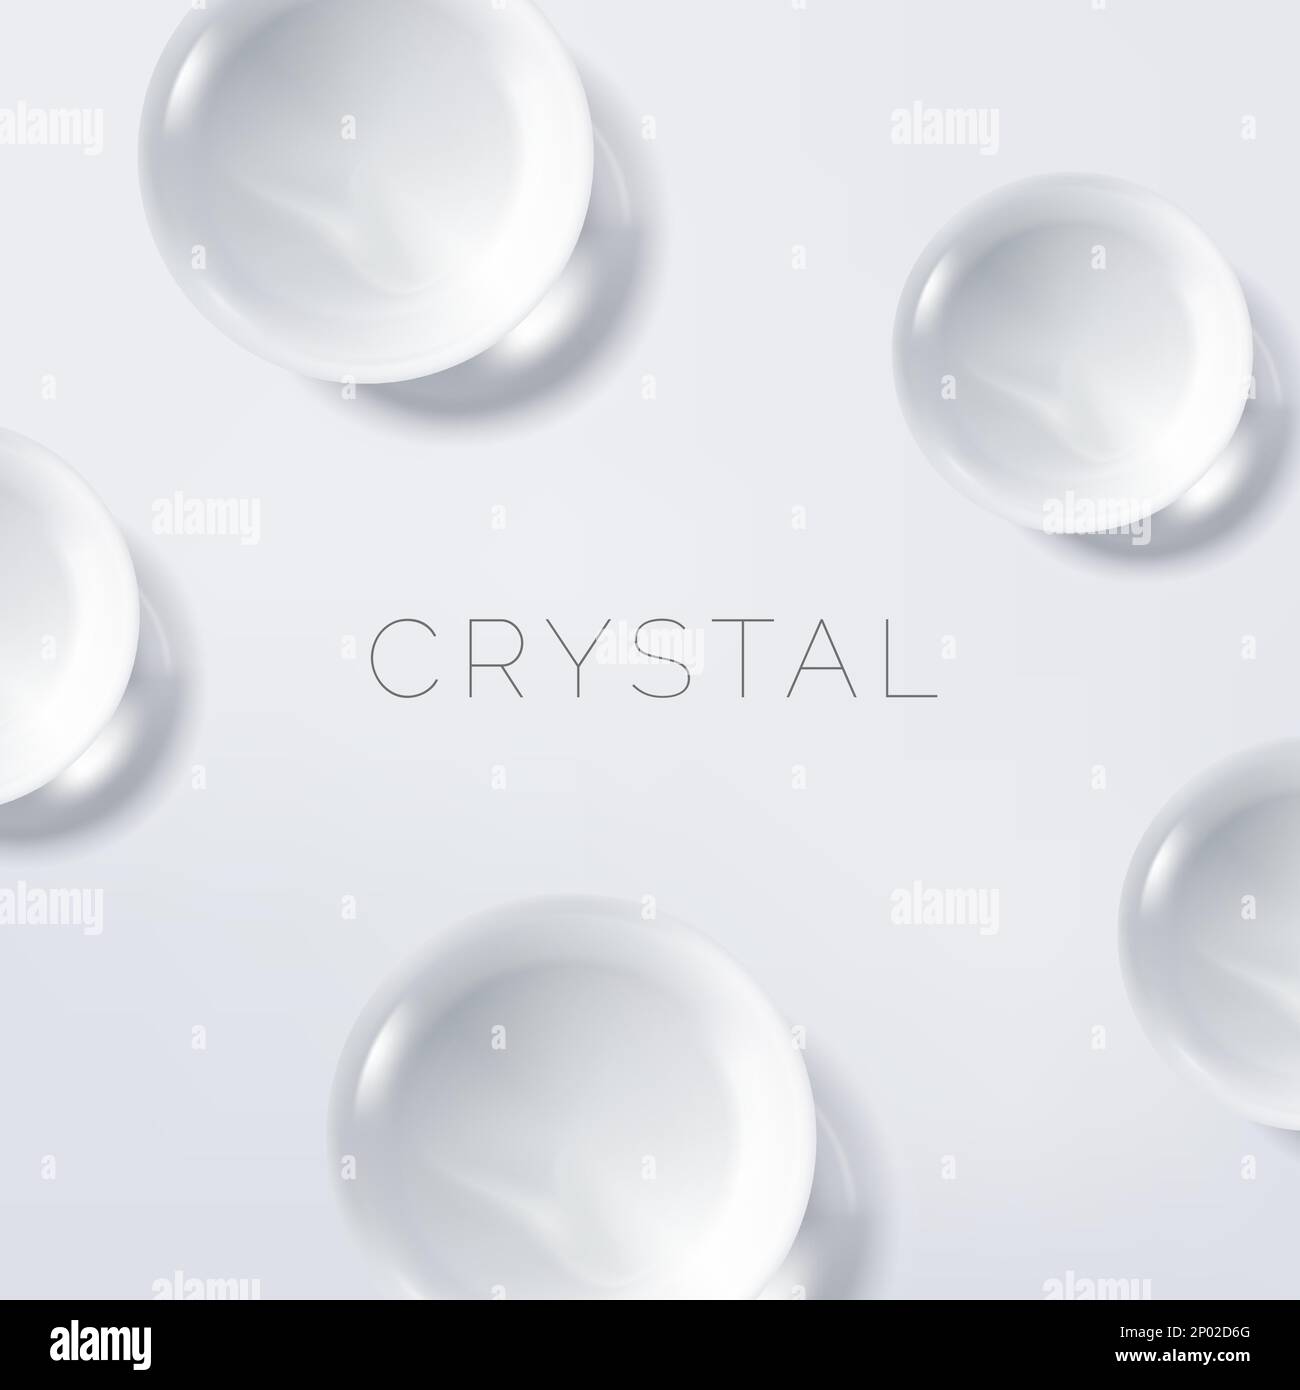 Immagine Vector Realistic Crystal Sphere 3D trasparente o bianco per Poster di bellezza e cosmetici, copertina del libro o sfondo pubblicitario. Illustrazione Vettoriale